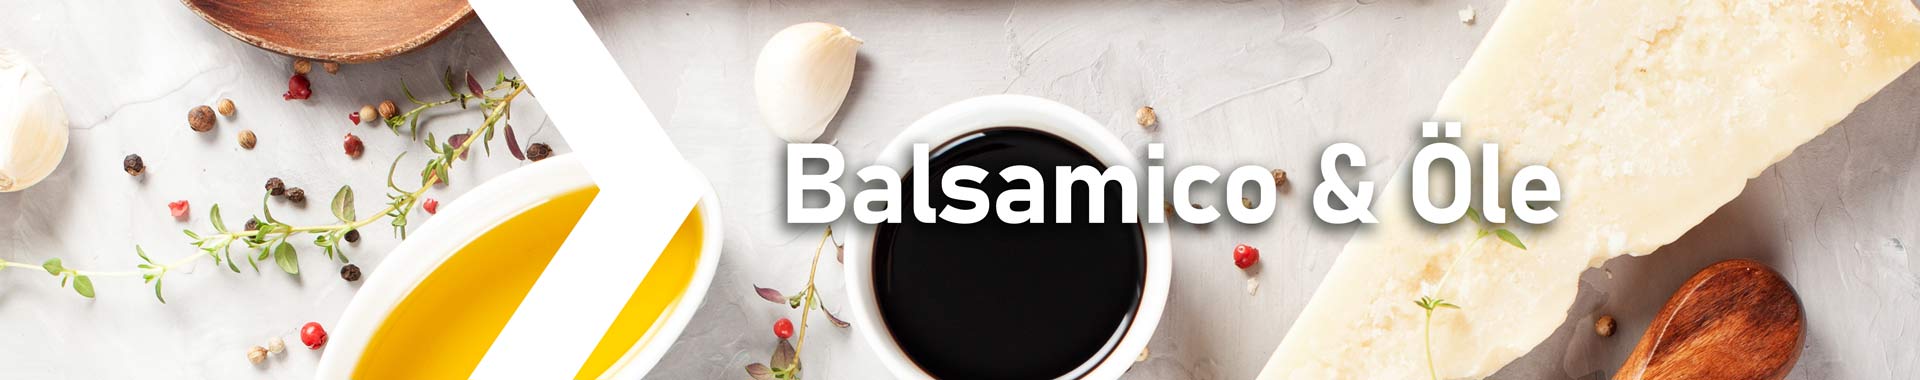 Balsamico & Öle